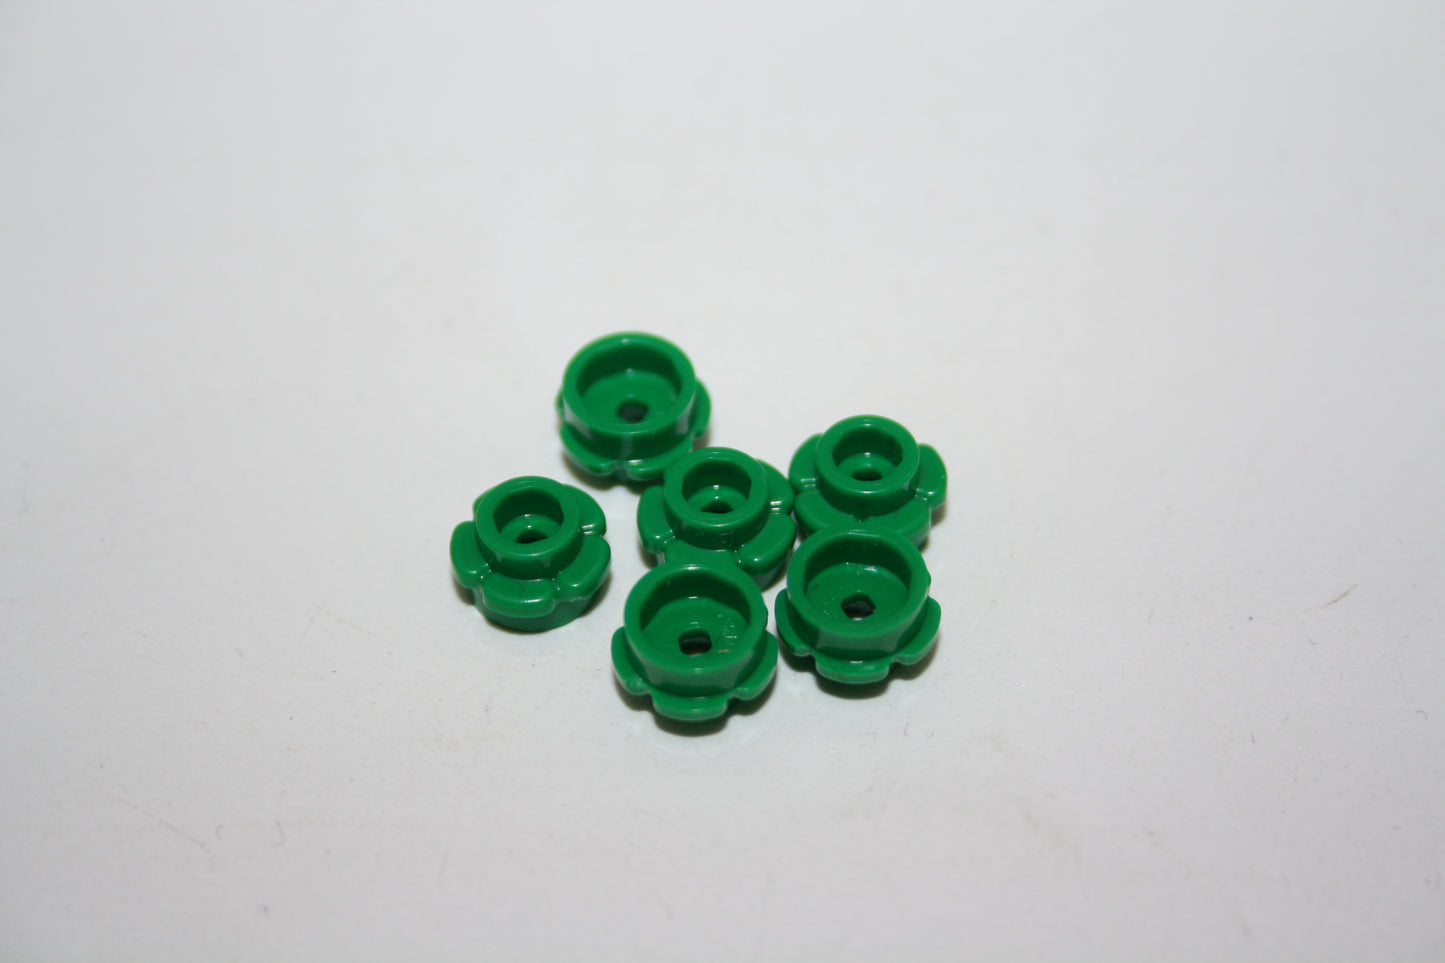 LEGO® - 1x1 Platte rund/ round plate with Flower edge - grün/green - 24866 - Grünzeug 6x-500x Sparpaket